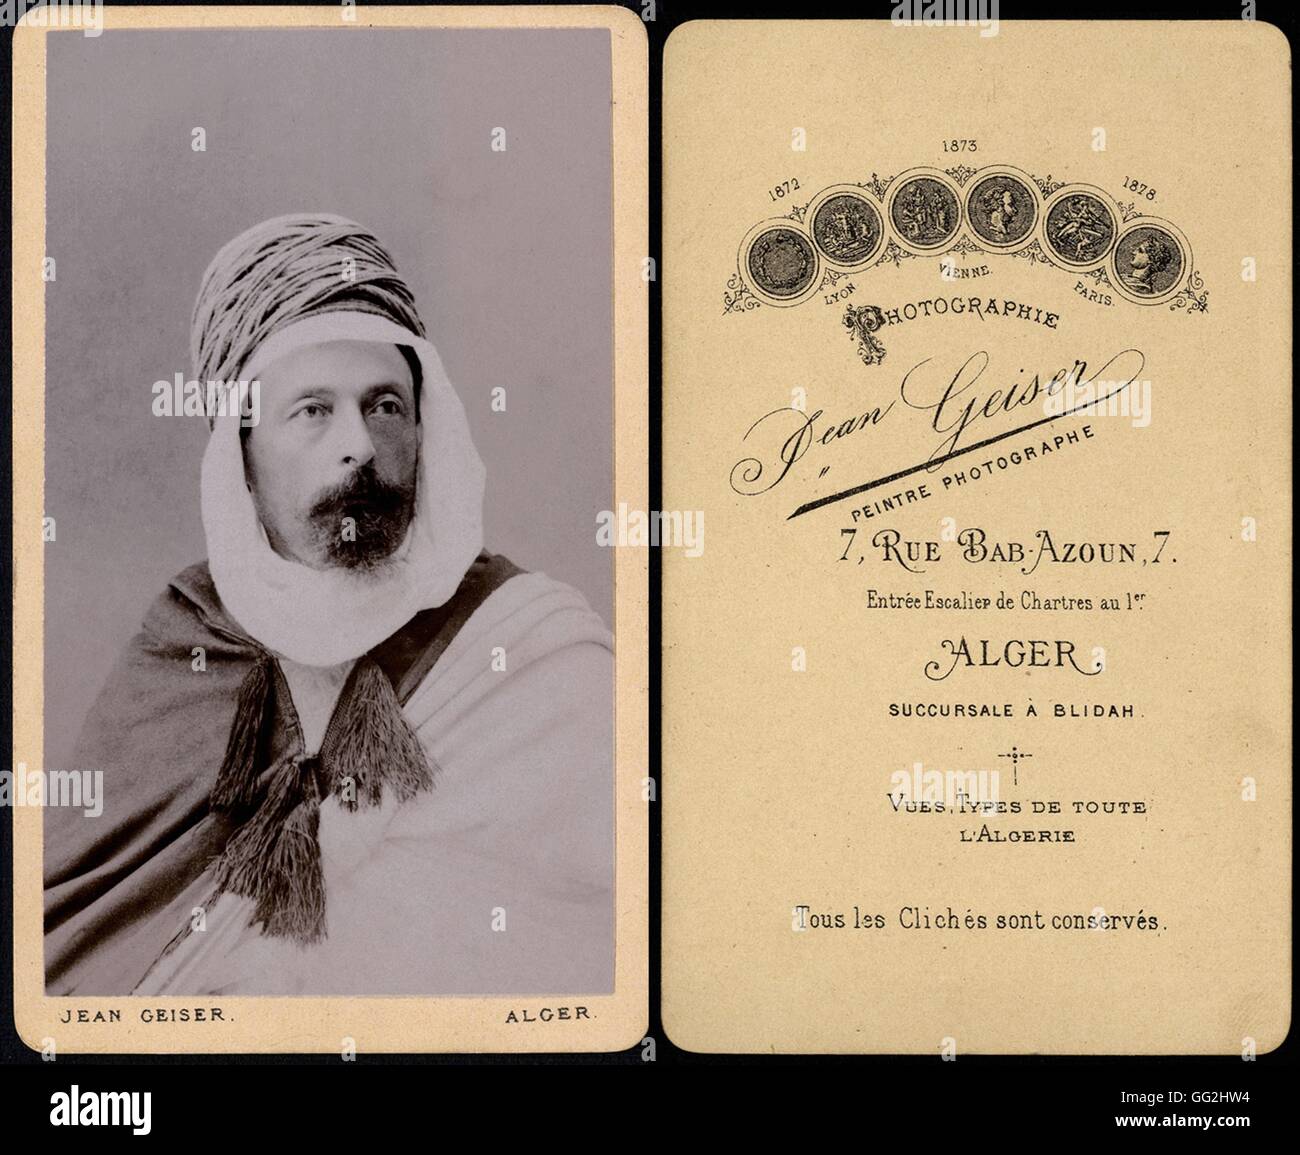 Portrait von Pierre Loti (1850-1923), französischer Schriftsteller und Marineoffizier Foto von Jean Geiser, Fotograf in Algier Größe: Visitenkarte Stockfoto